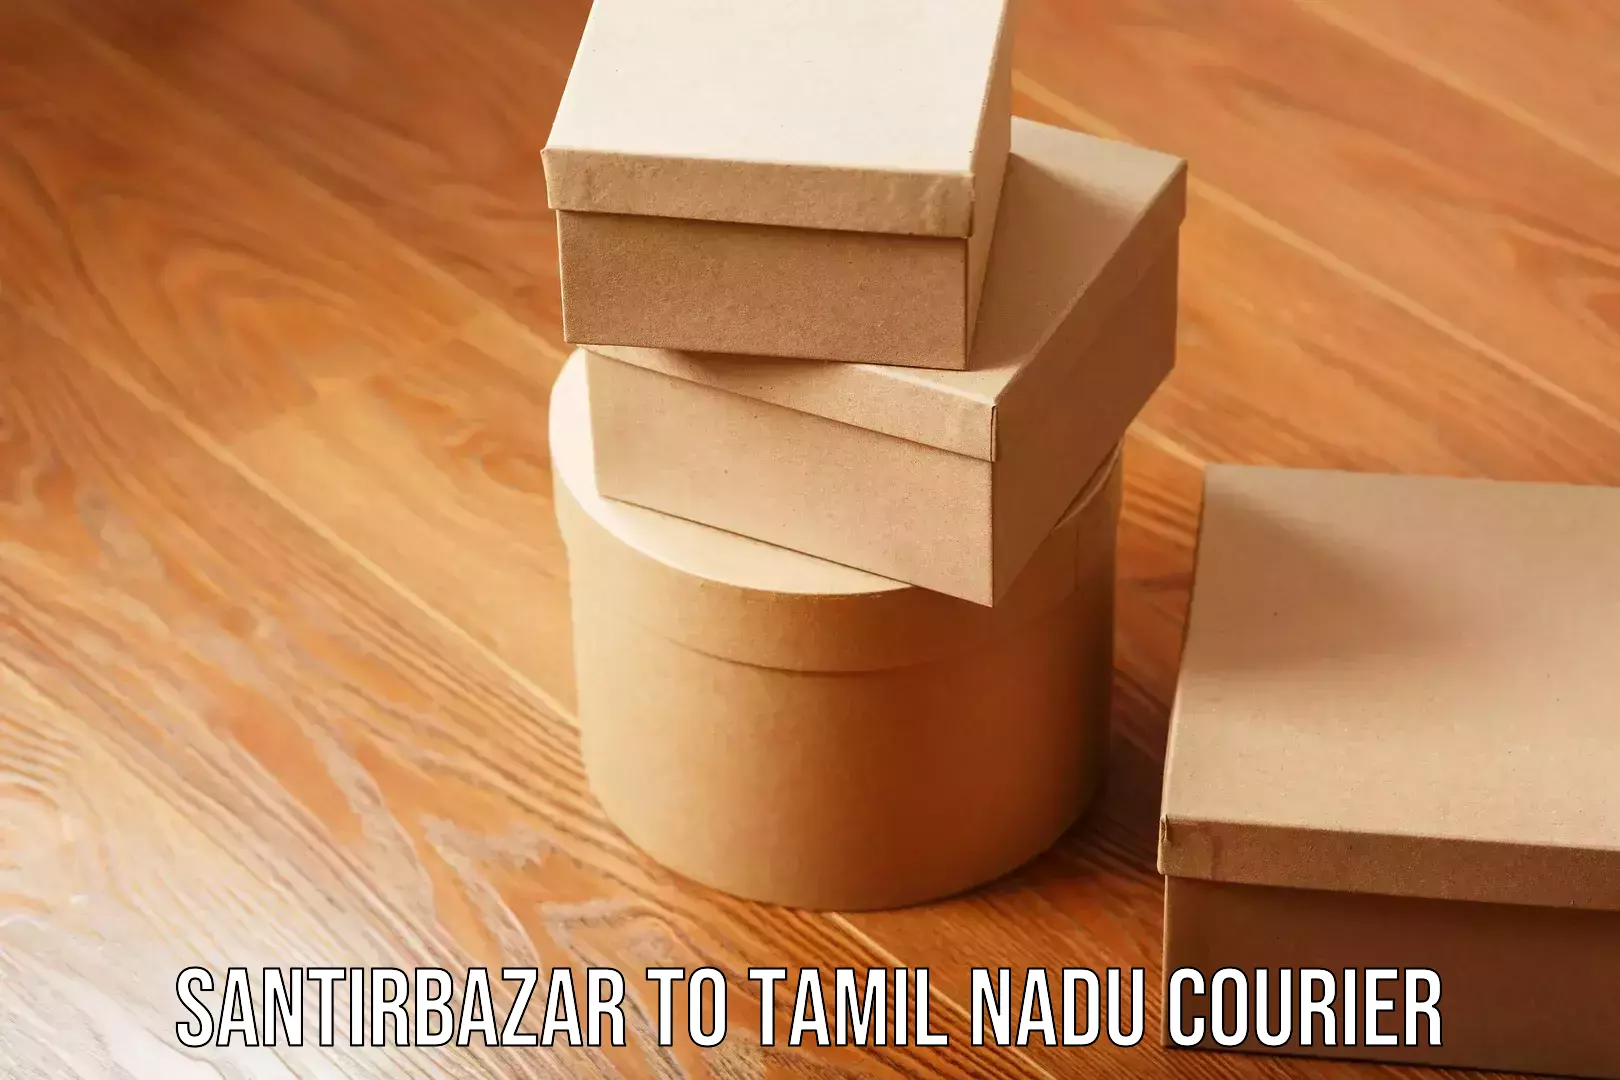 Efficient logistics management Santirbazar to Tamil Nadu